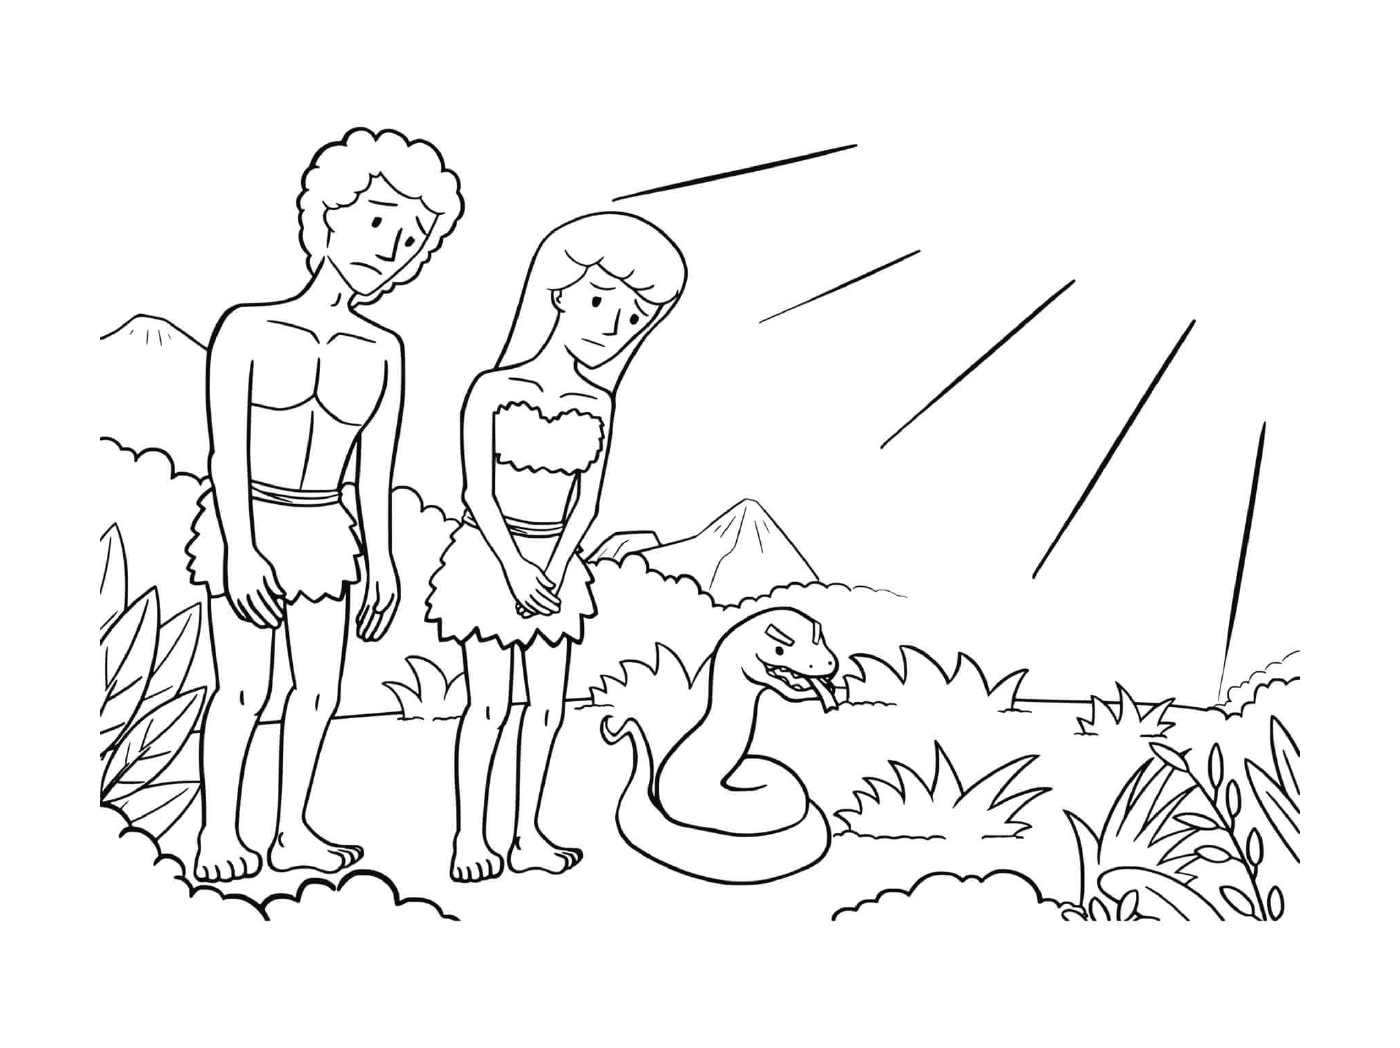  Мужчина и женщина стоят рядом со змеей 